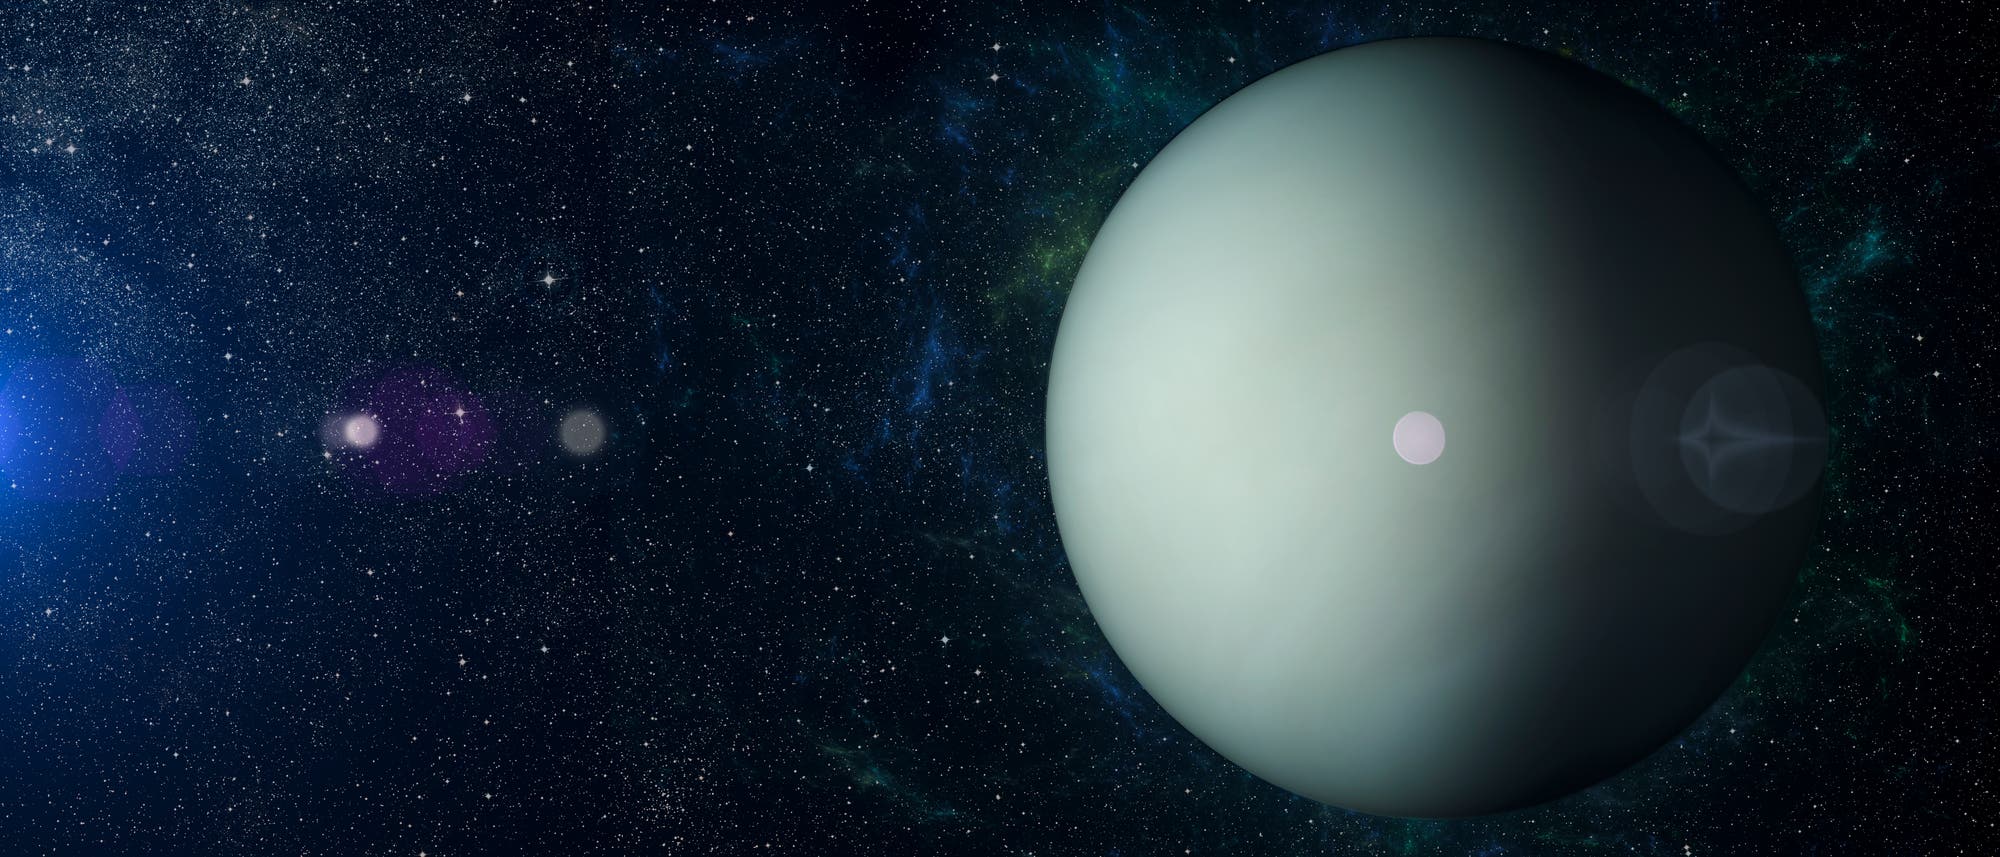 Der Gasriese Uranus, siebter Planet im Sonnensystem